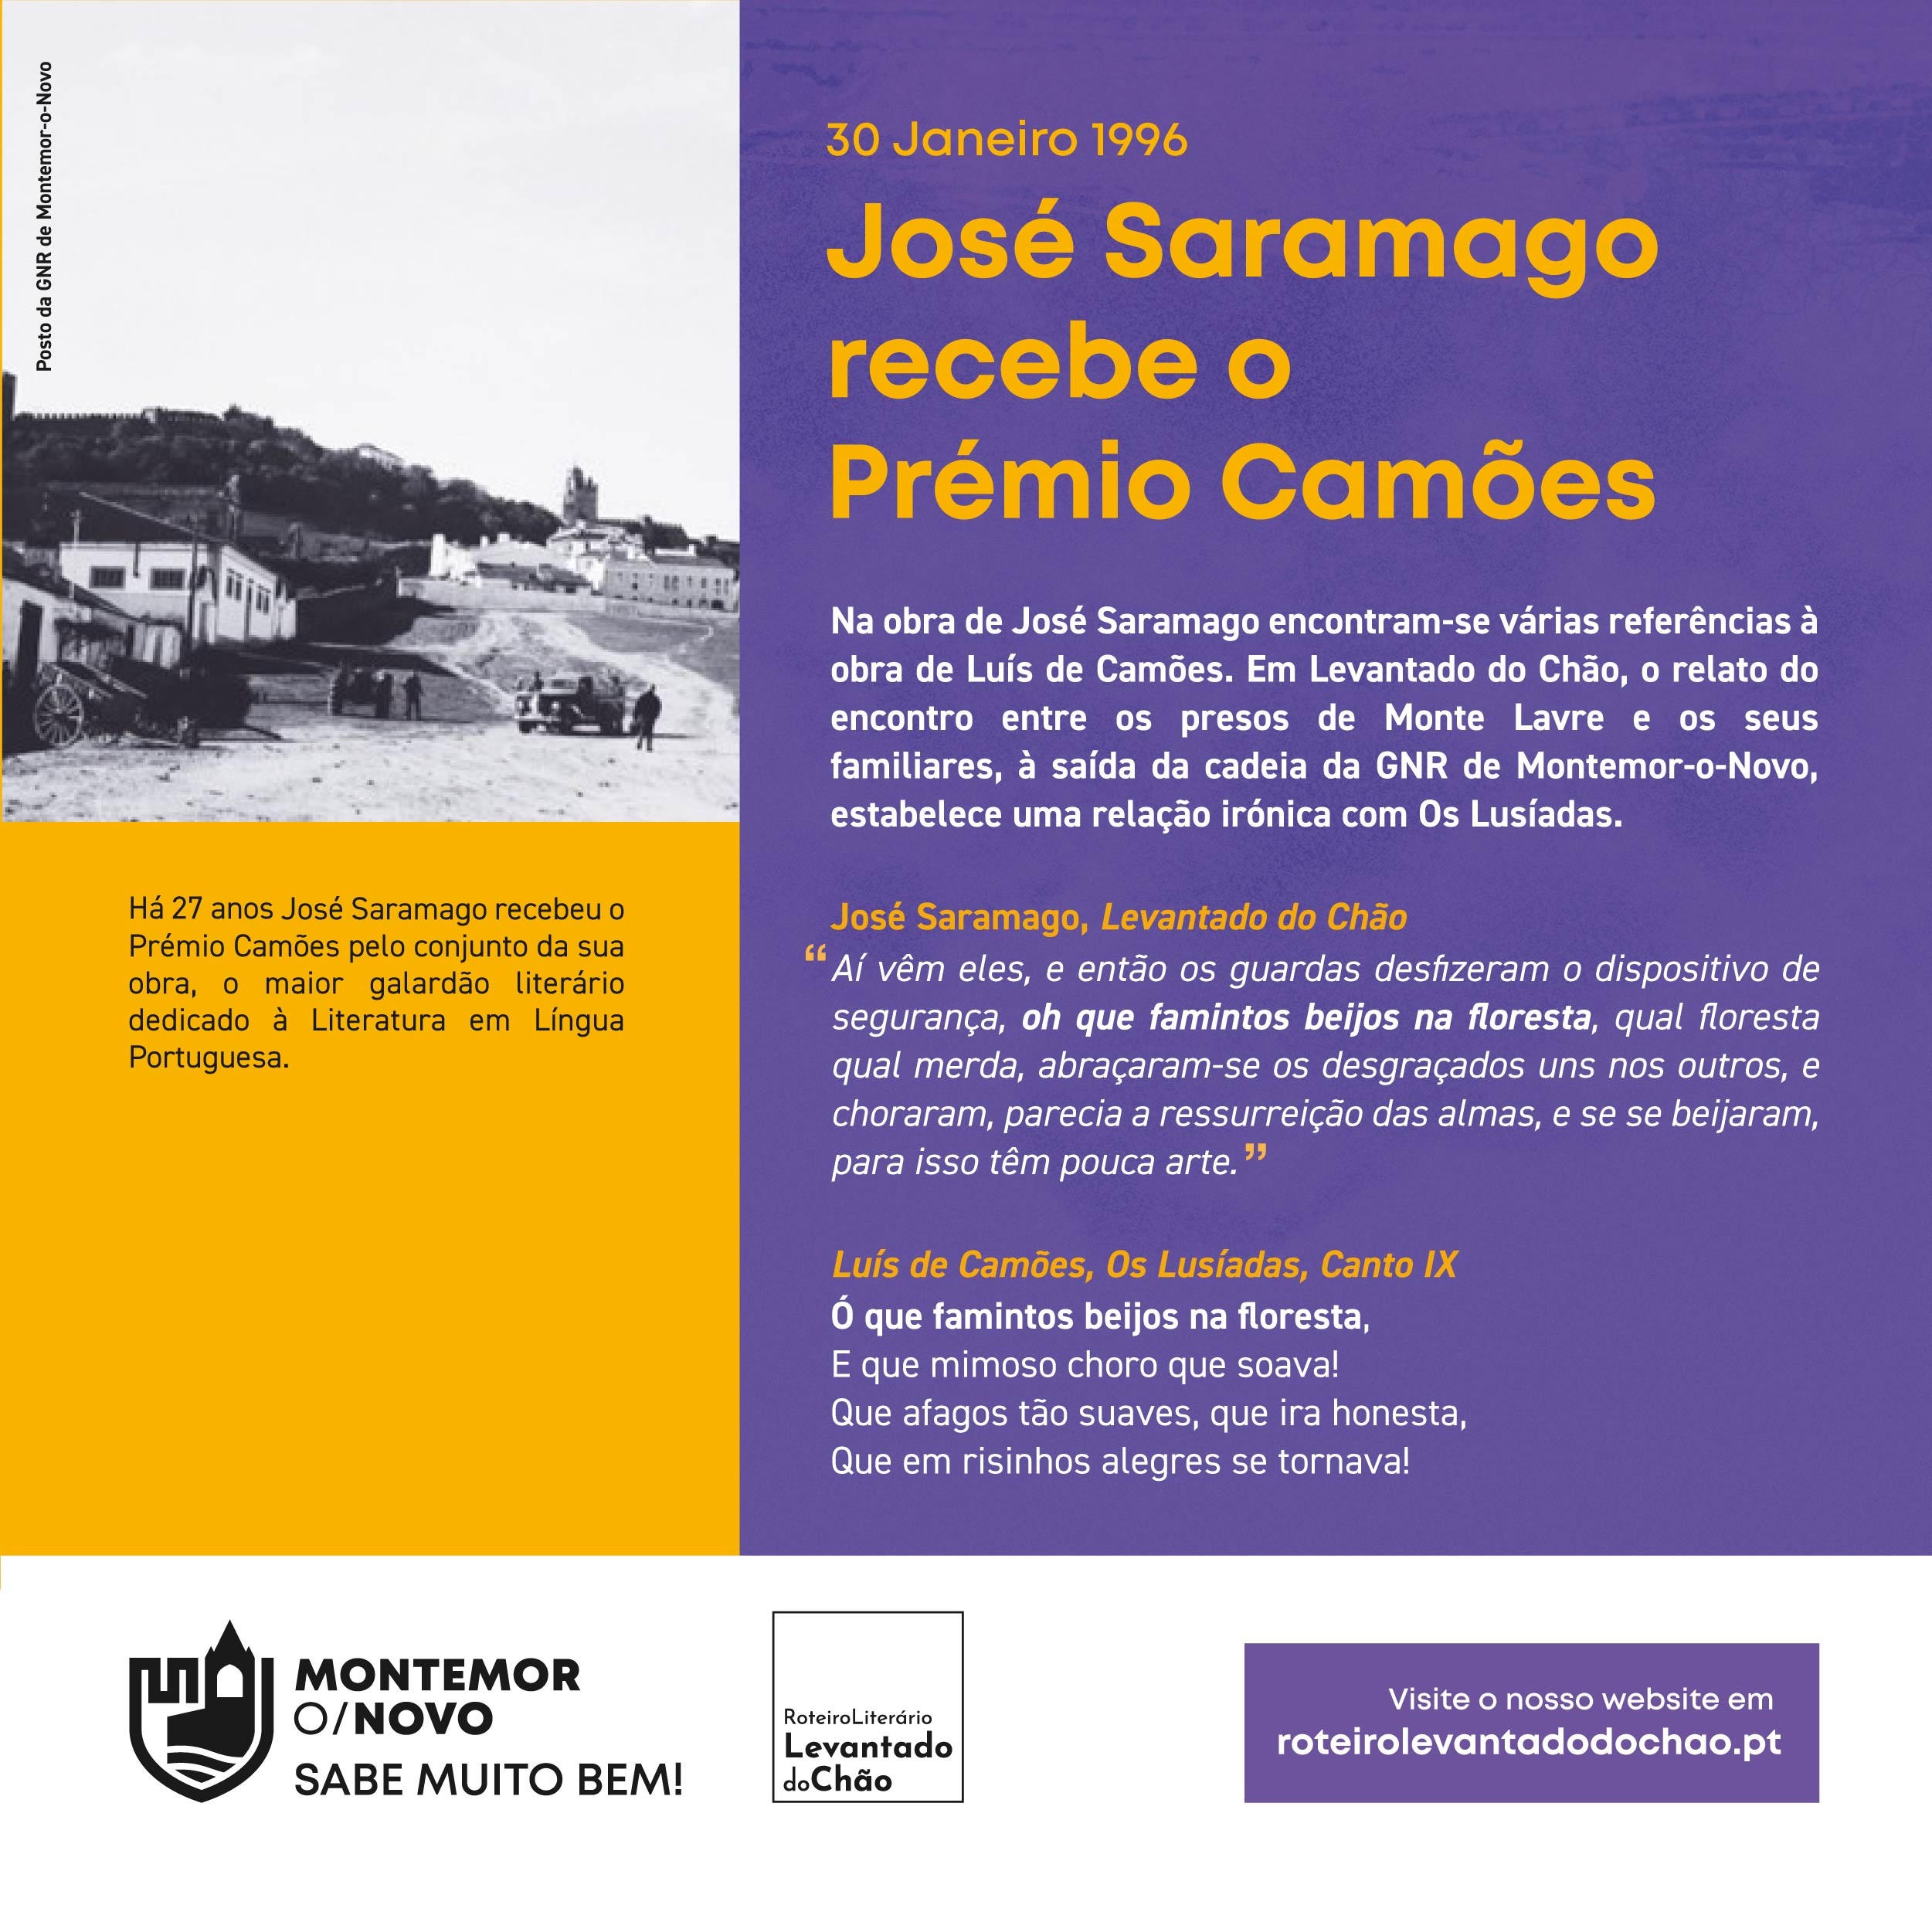 30 de janeiro 1996 – José Saramago recebe o Prémio Camões